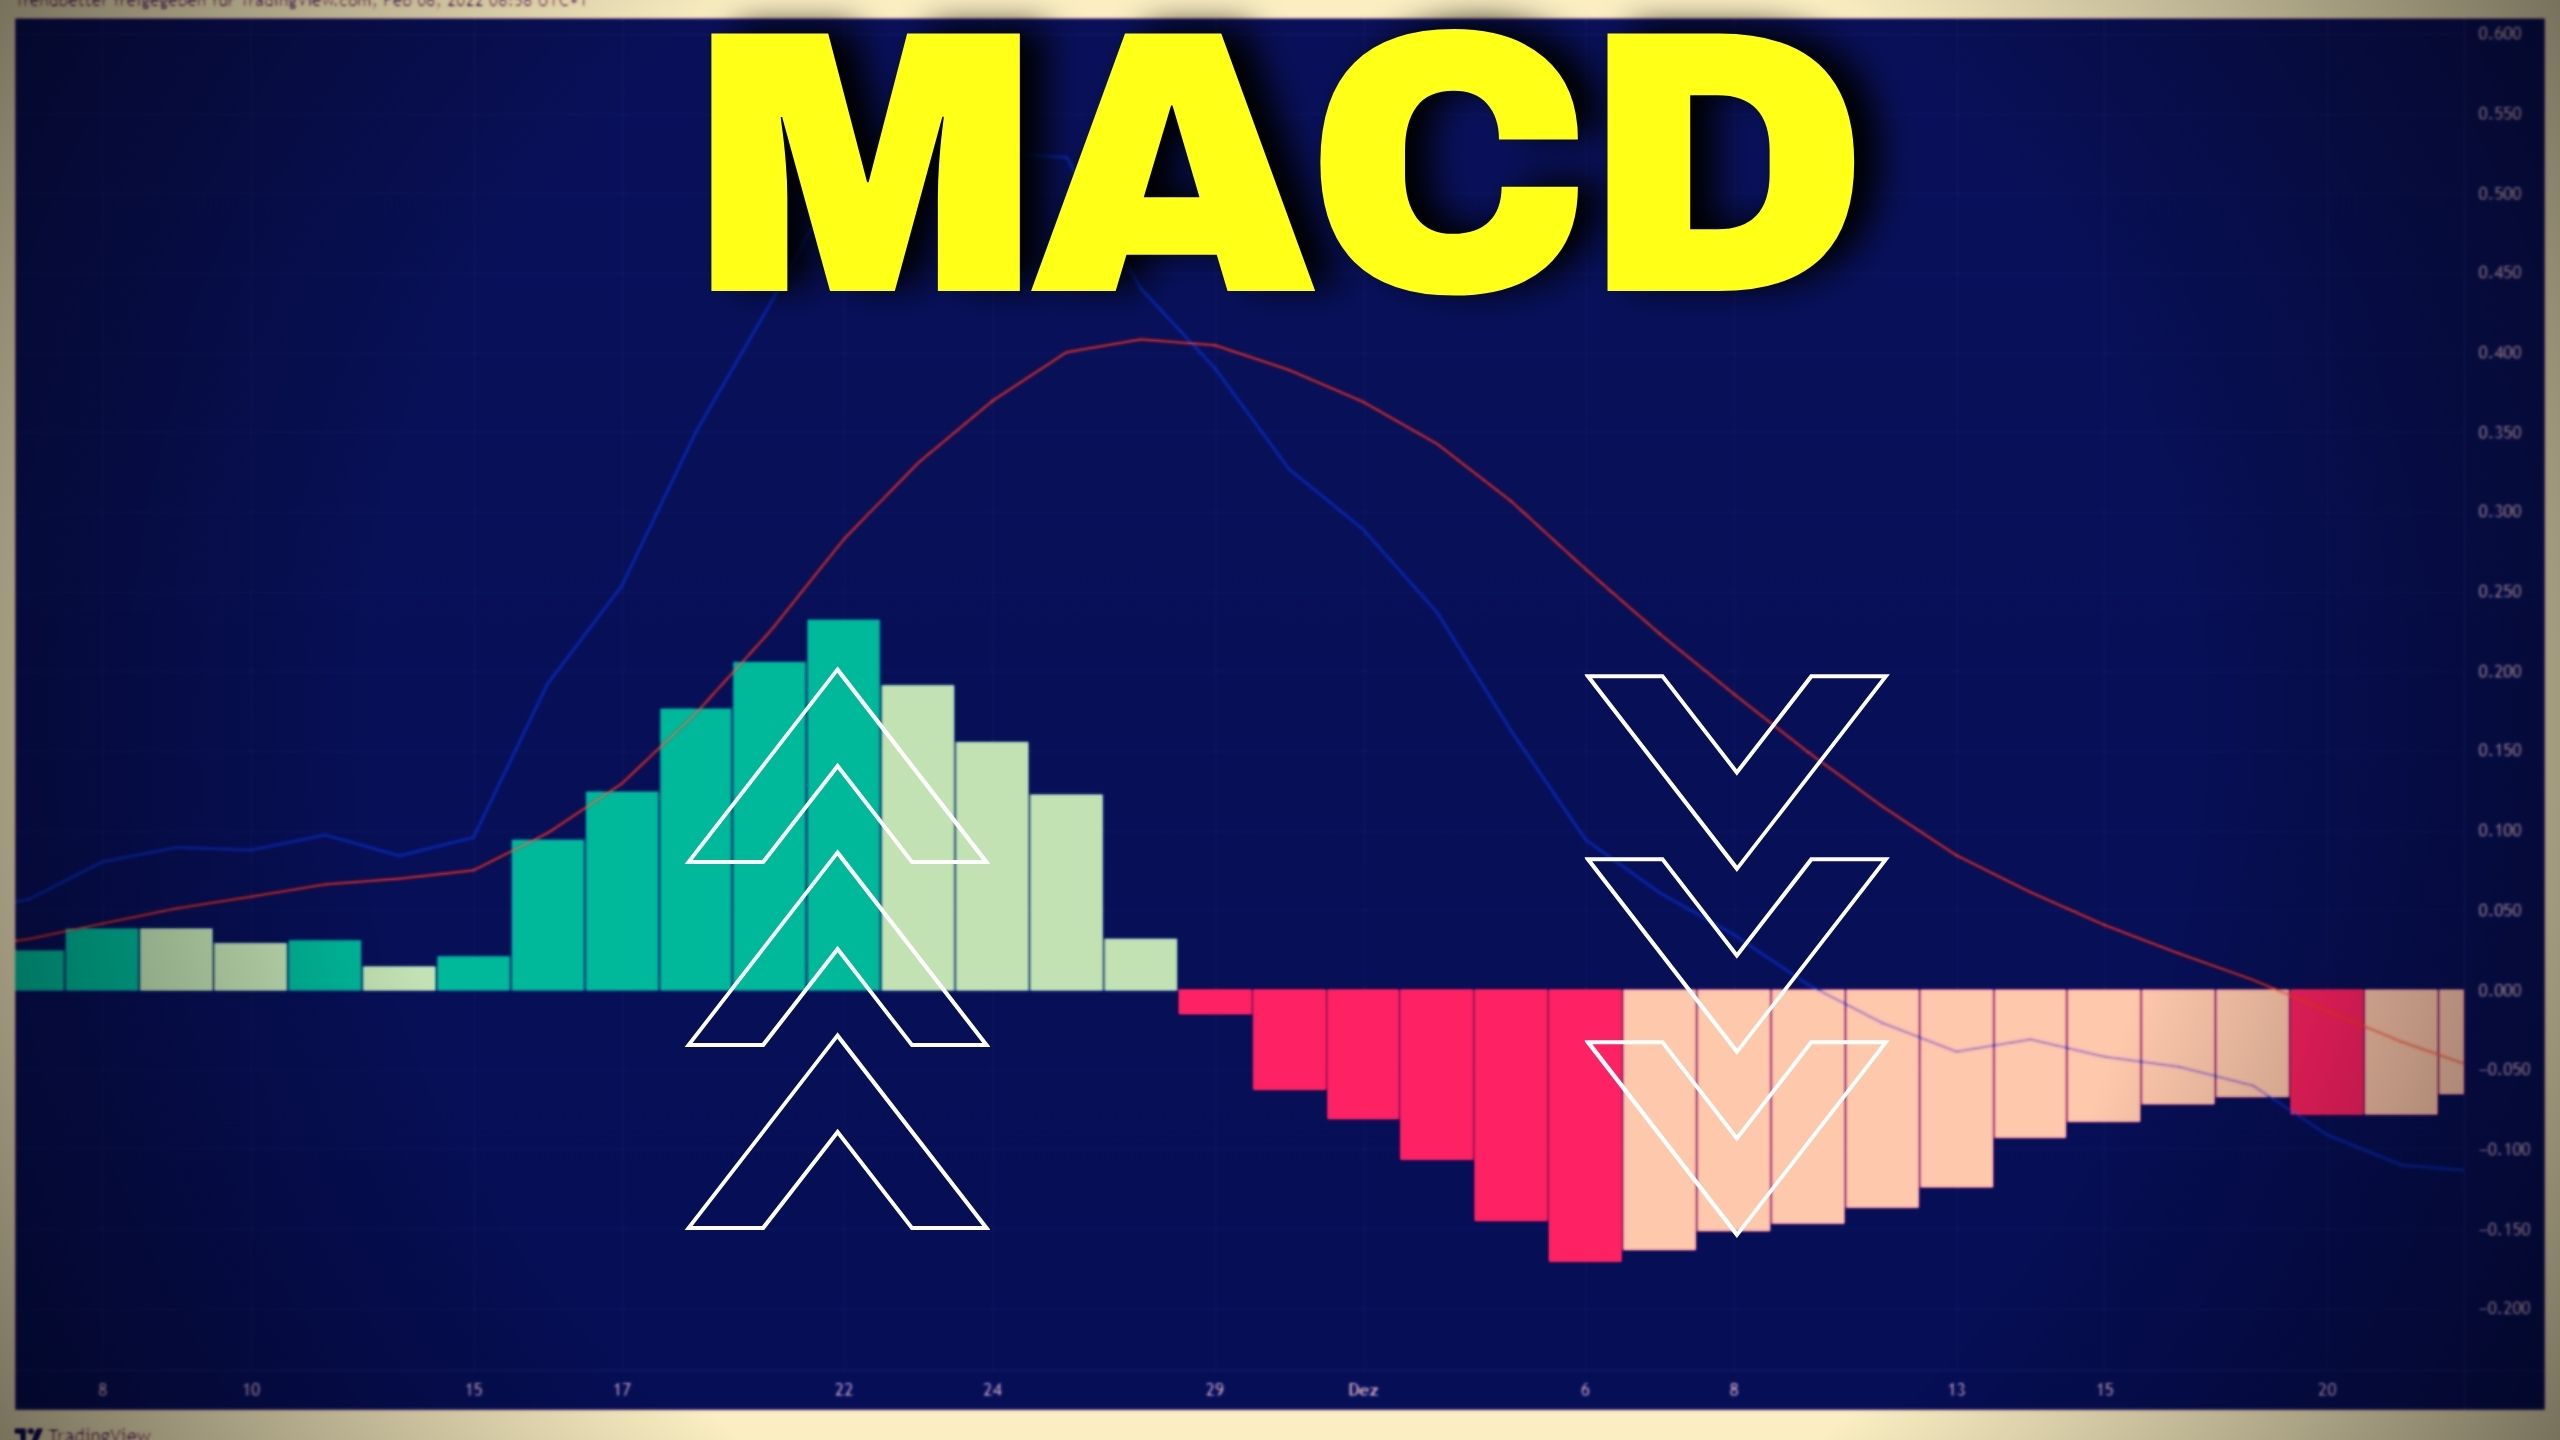 MACD Indikator – Erklärung für technische Analysen